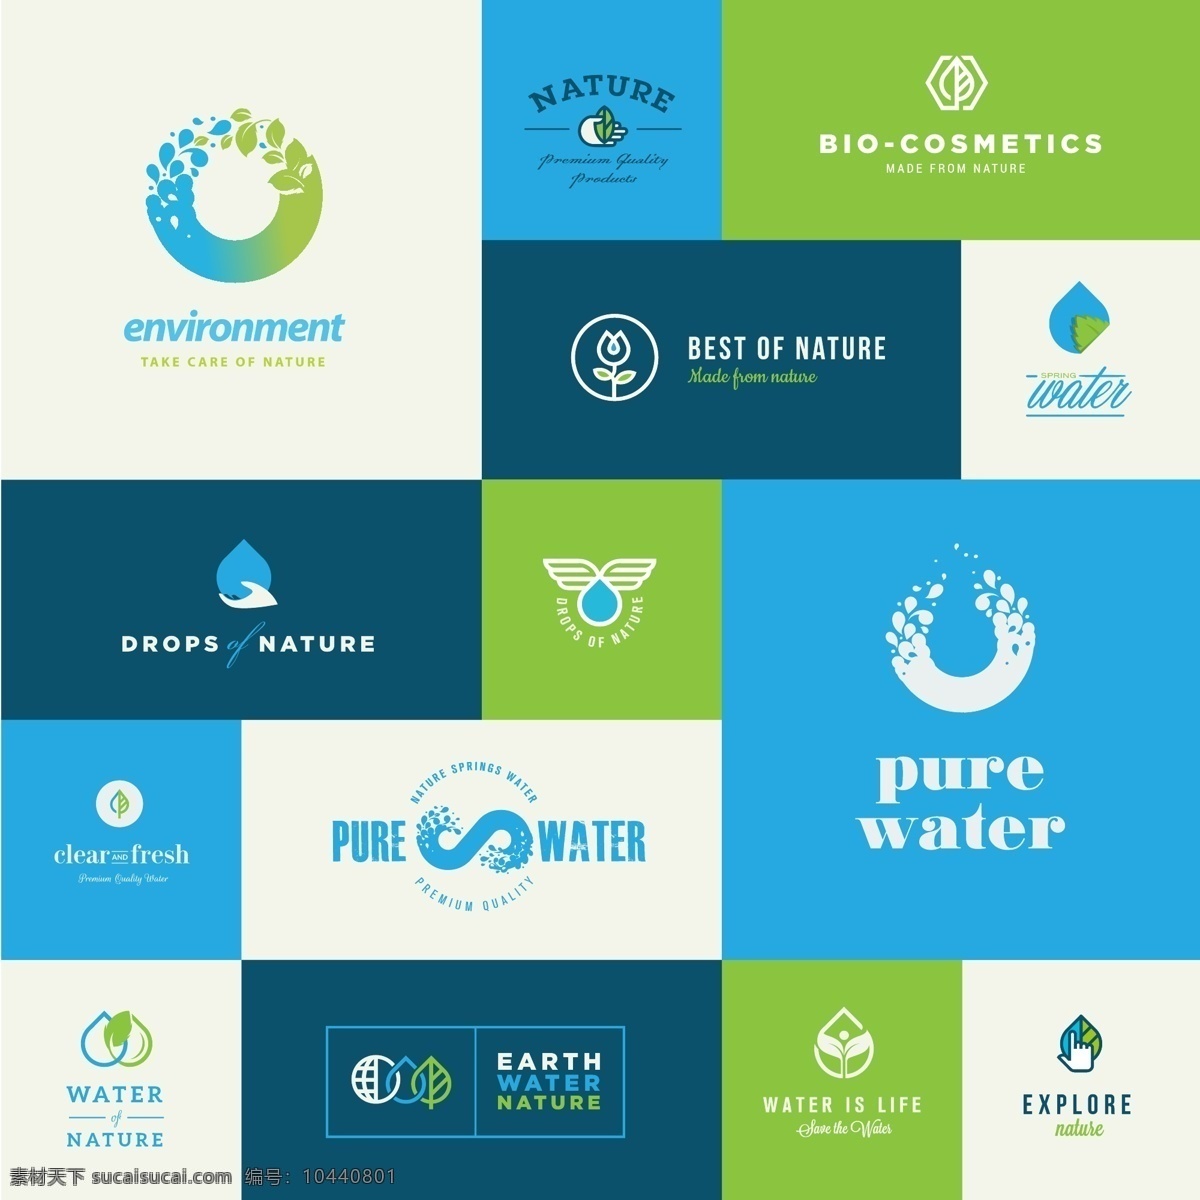 环保 行业 logo 标志 徽章 蓝色 水滴 矢量 下载素材 源文件 装饰背景 平面设计素材